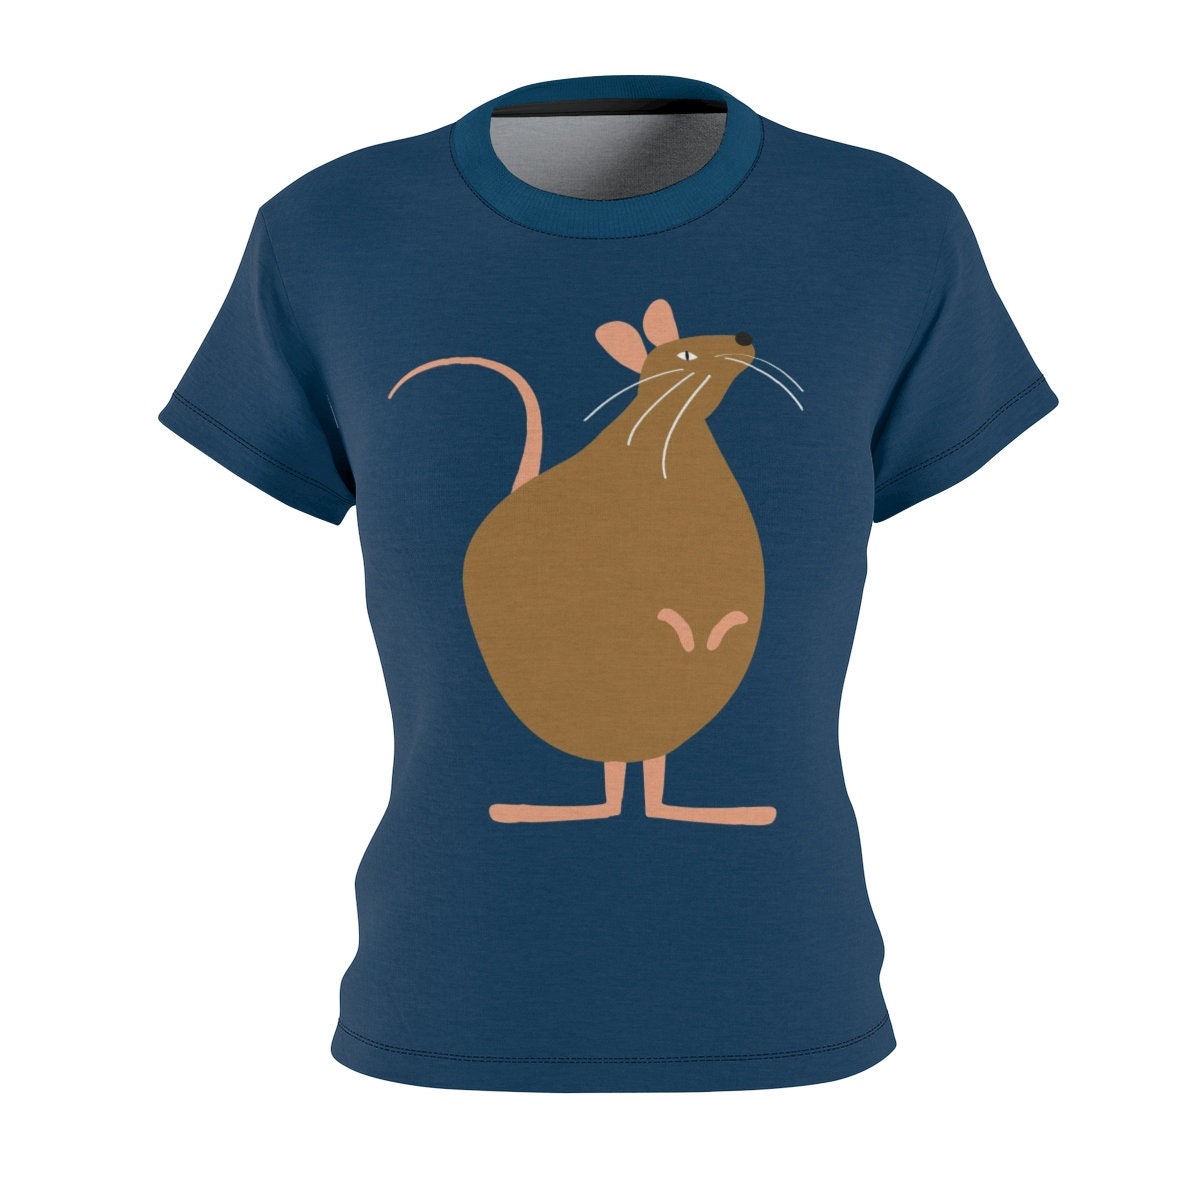 Year of the Rat / Astrology / Chinese / Zodiac / T-shirt / Tee / Shirt / Rat / Art / Valentine / Birthday / Clothing / Gift for Her - Chloe Lambertin